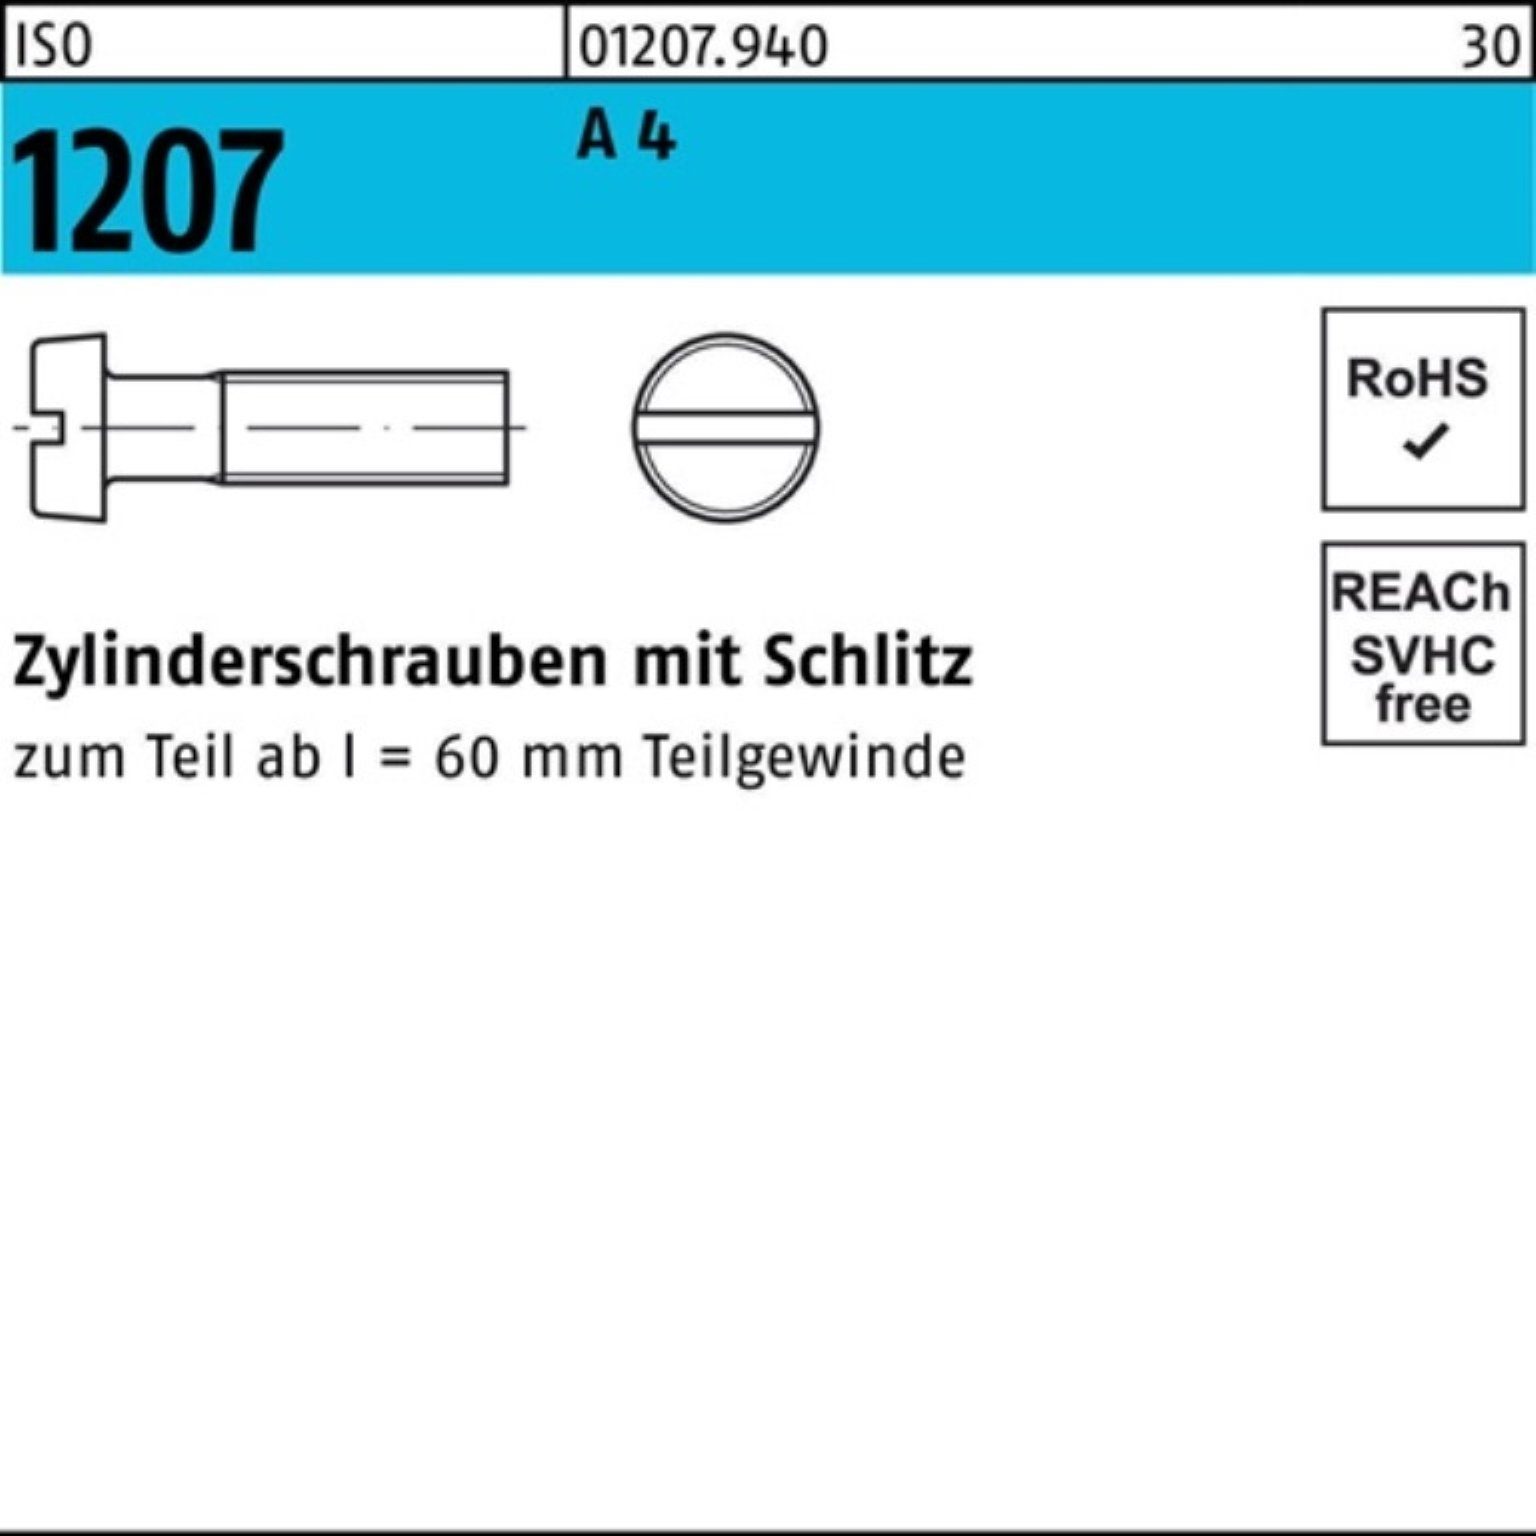 1000 ISO Zylinderschraube M4x 1207 Stück IS Zylinderschraube 5 A Pack 1000er Schlitz 4 Reyher